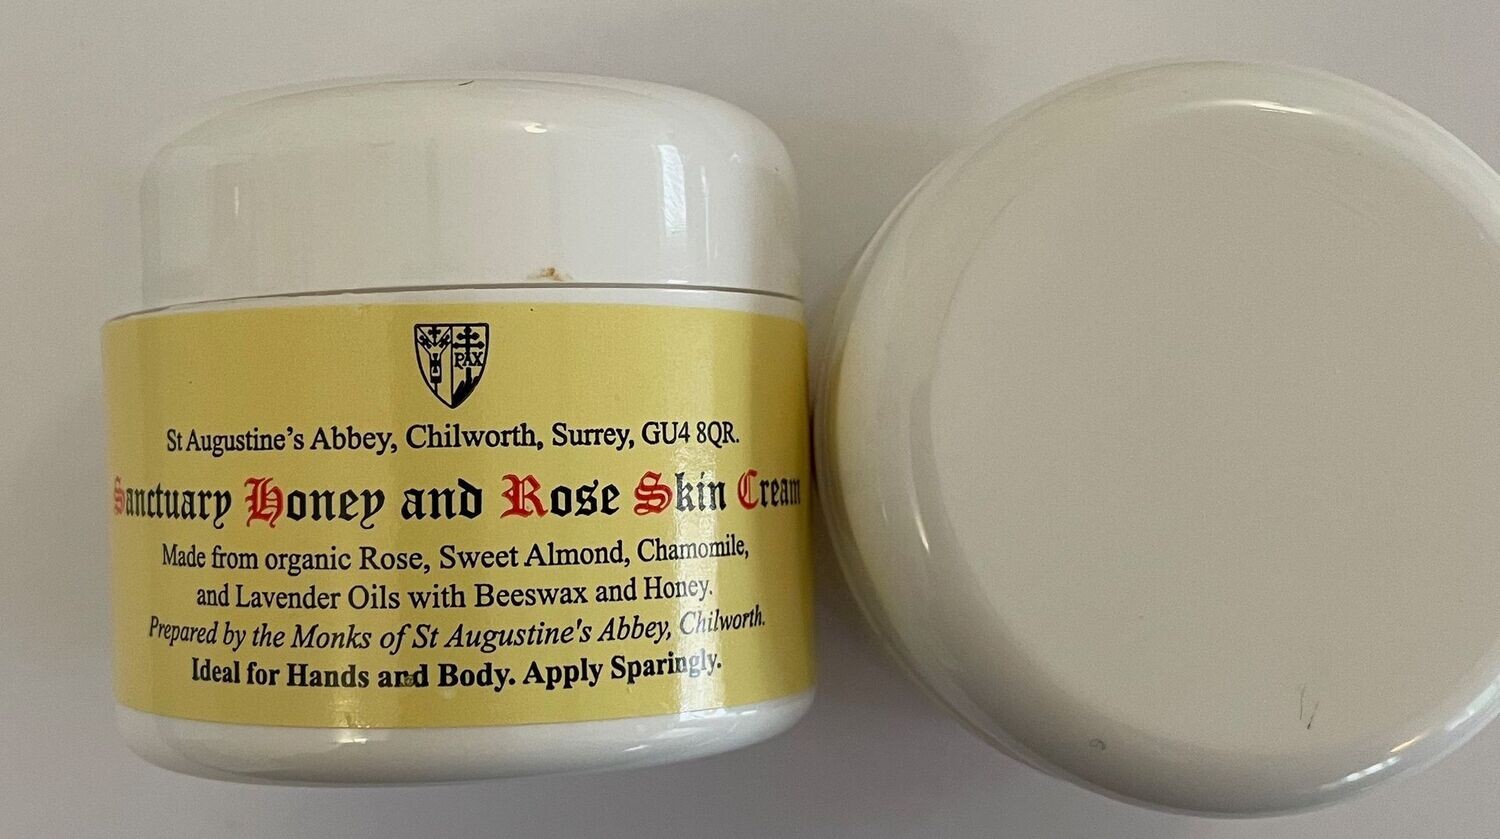 Sanctuary Honey and Rose Skin Cream